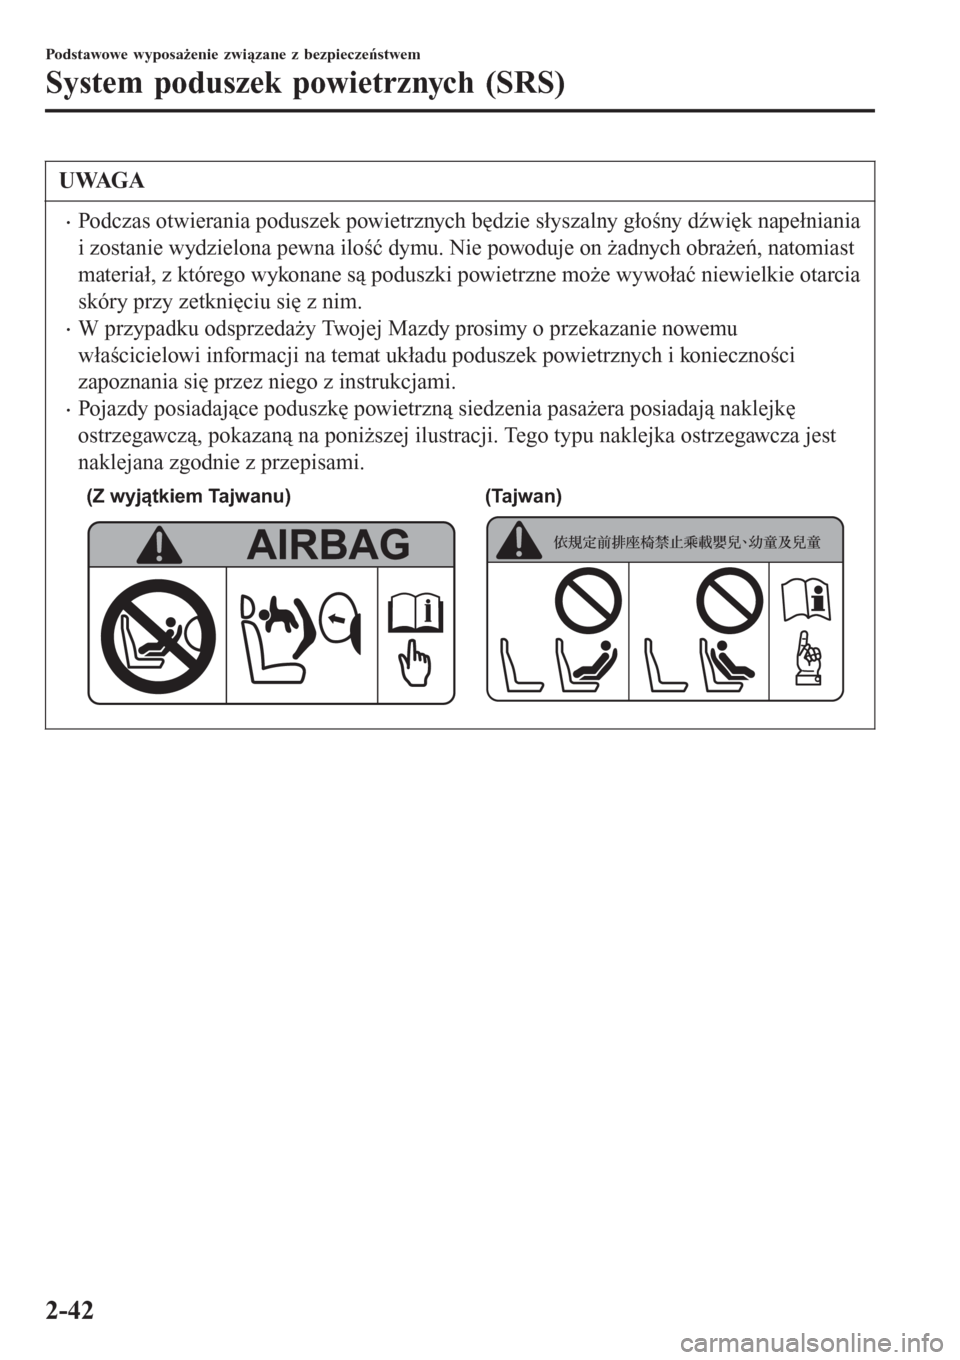 MAZDA MODEL MX-5 2015  Instrukcja Obsługi (in Polish) UWAGA
•Podczas otwierania poduszek powietrznych będzie słyszalny głośny dźwięk napełniania
i zostanie wydzielona pewna ilość dymu. Nie powoduje on żadnych obrażeń, natomiast
materiał, z